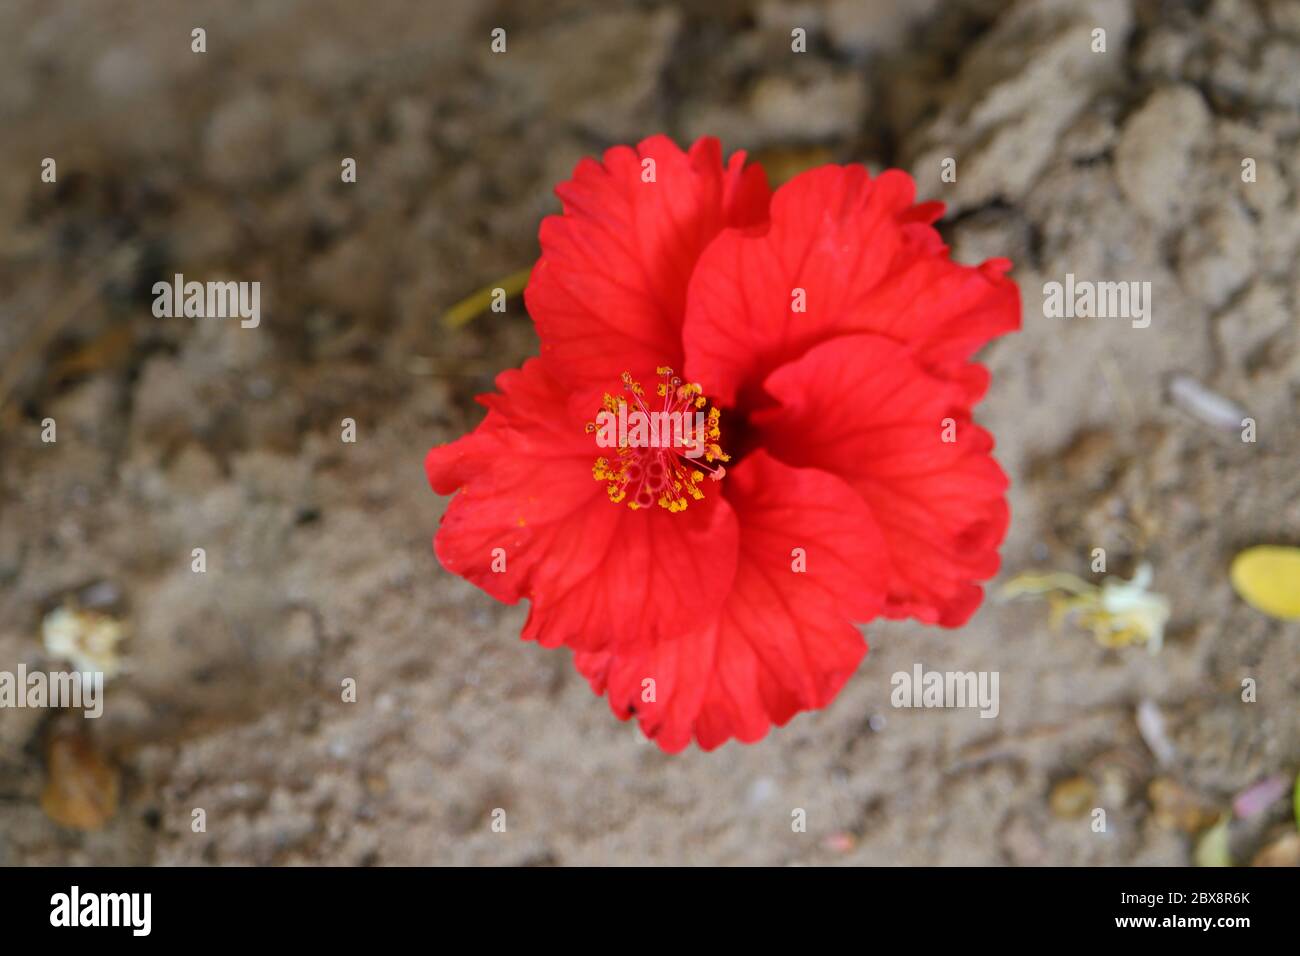 image fleur libre de droit ,red hibiscus flower pond on ground, hd image Banque D'Images